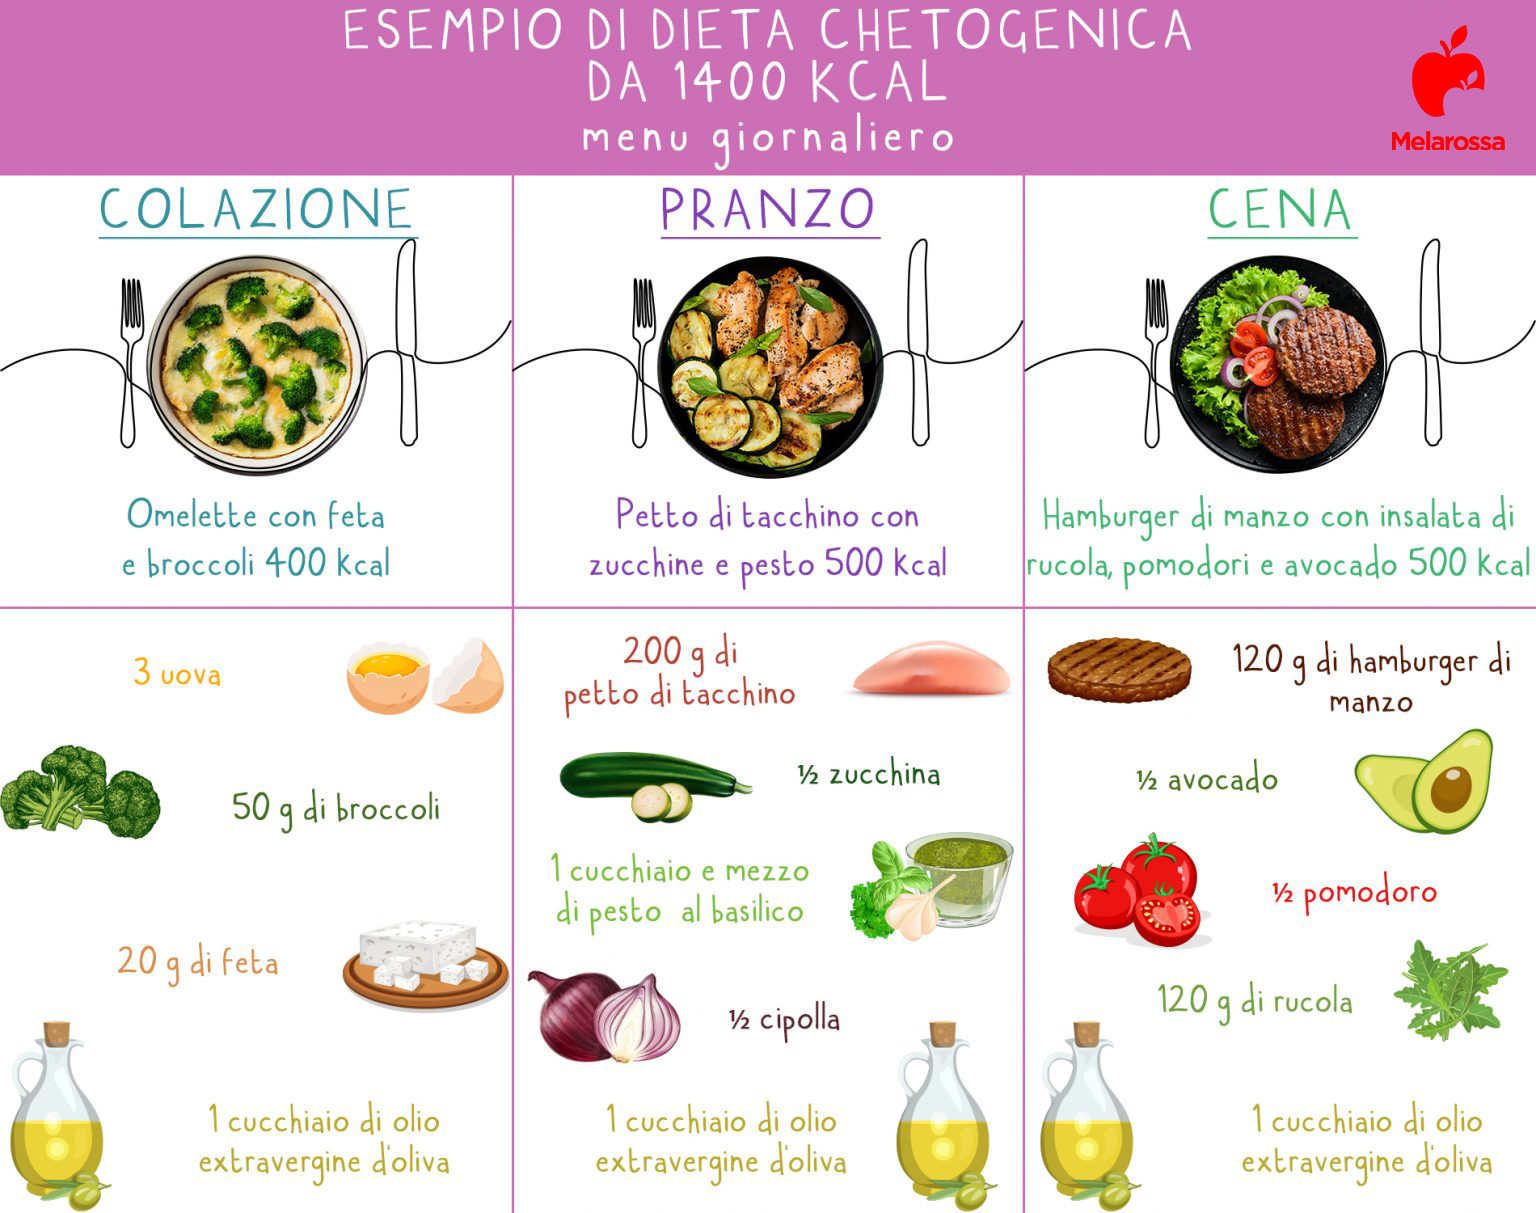 Dieta chetogenica: esempio menù giornaliero